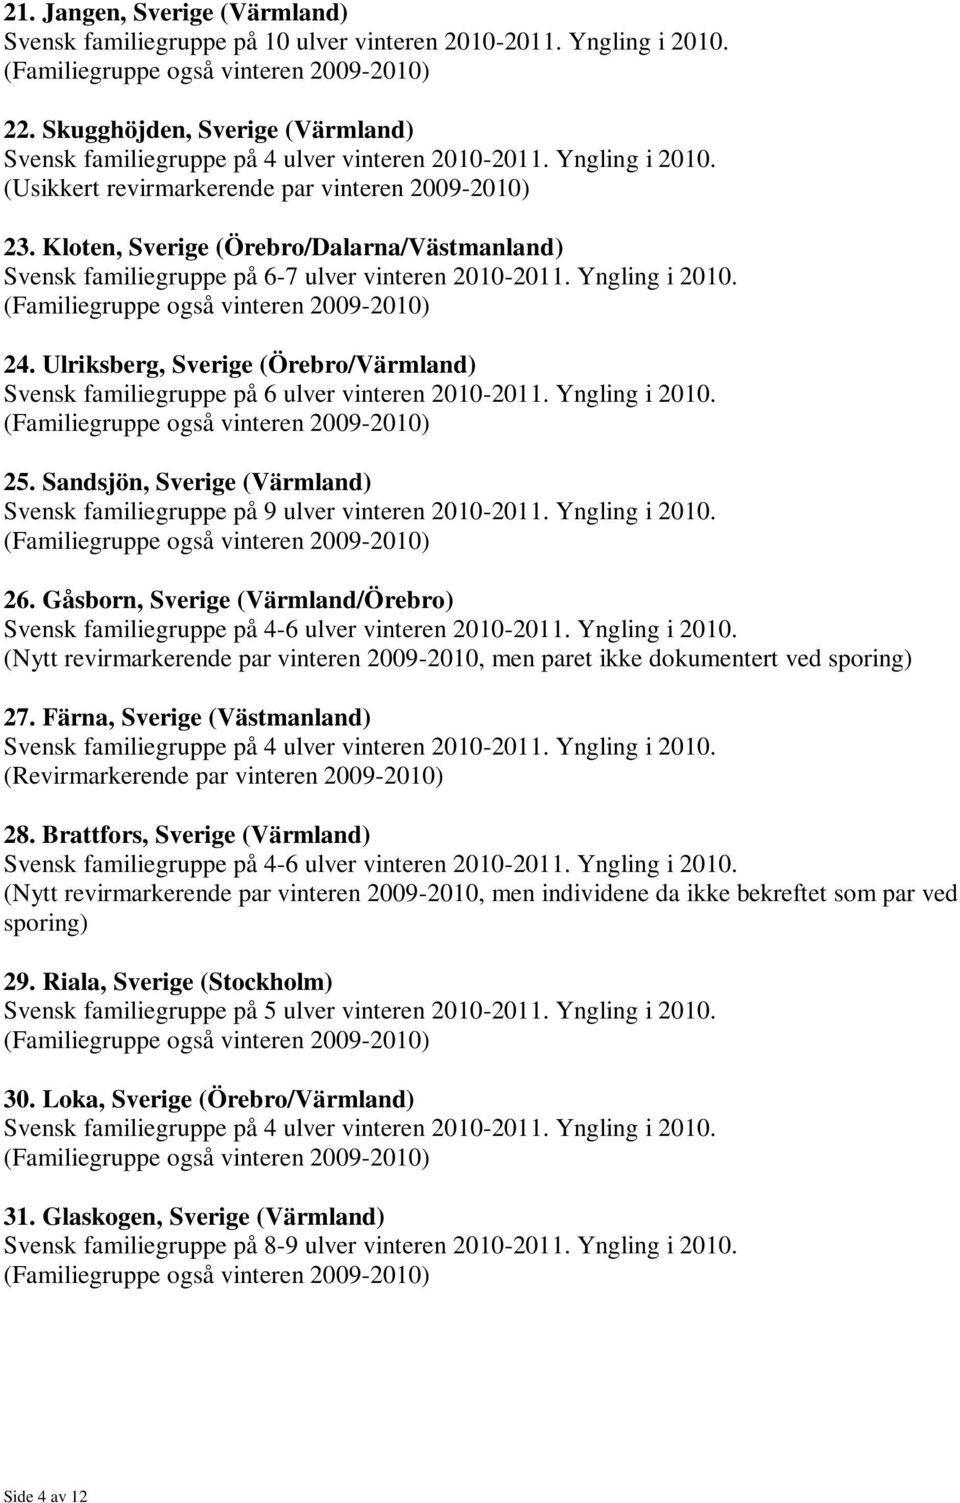 Ulriksberg, Sverige (Örebro/Värmland) 25. Sandsjön, Sverige (Värmland) Svensk familiegruppe på 9 ulver vinteren 2010-2011. Yngling i 2010. 26.